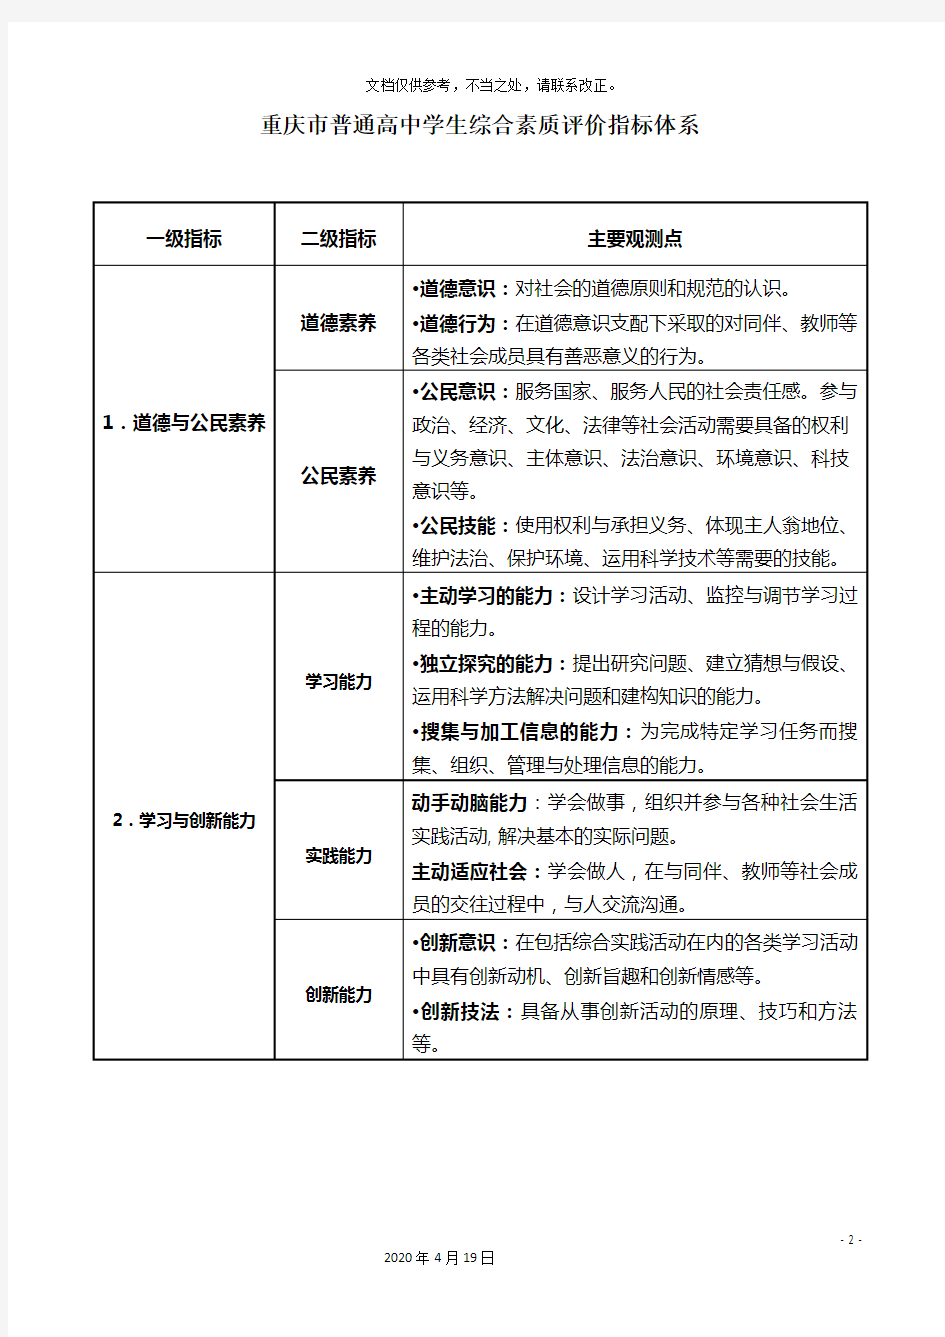 重庆市普通高中学生综合素质评价指标体系